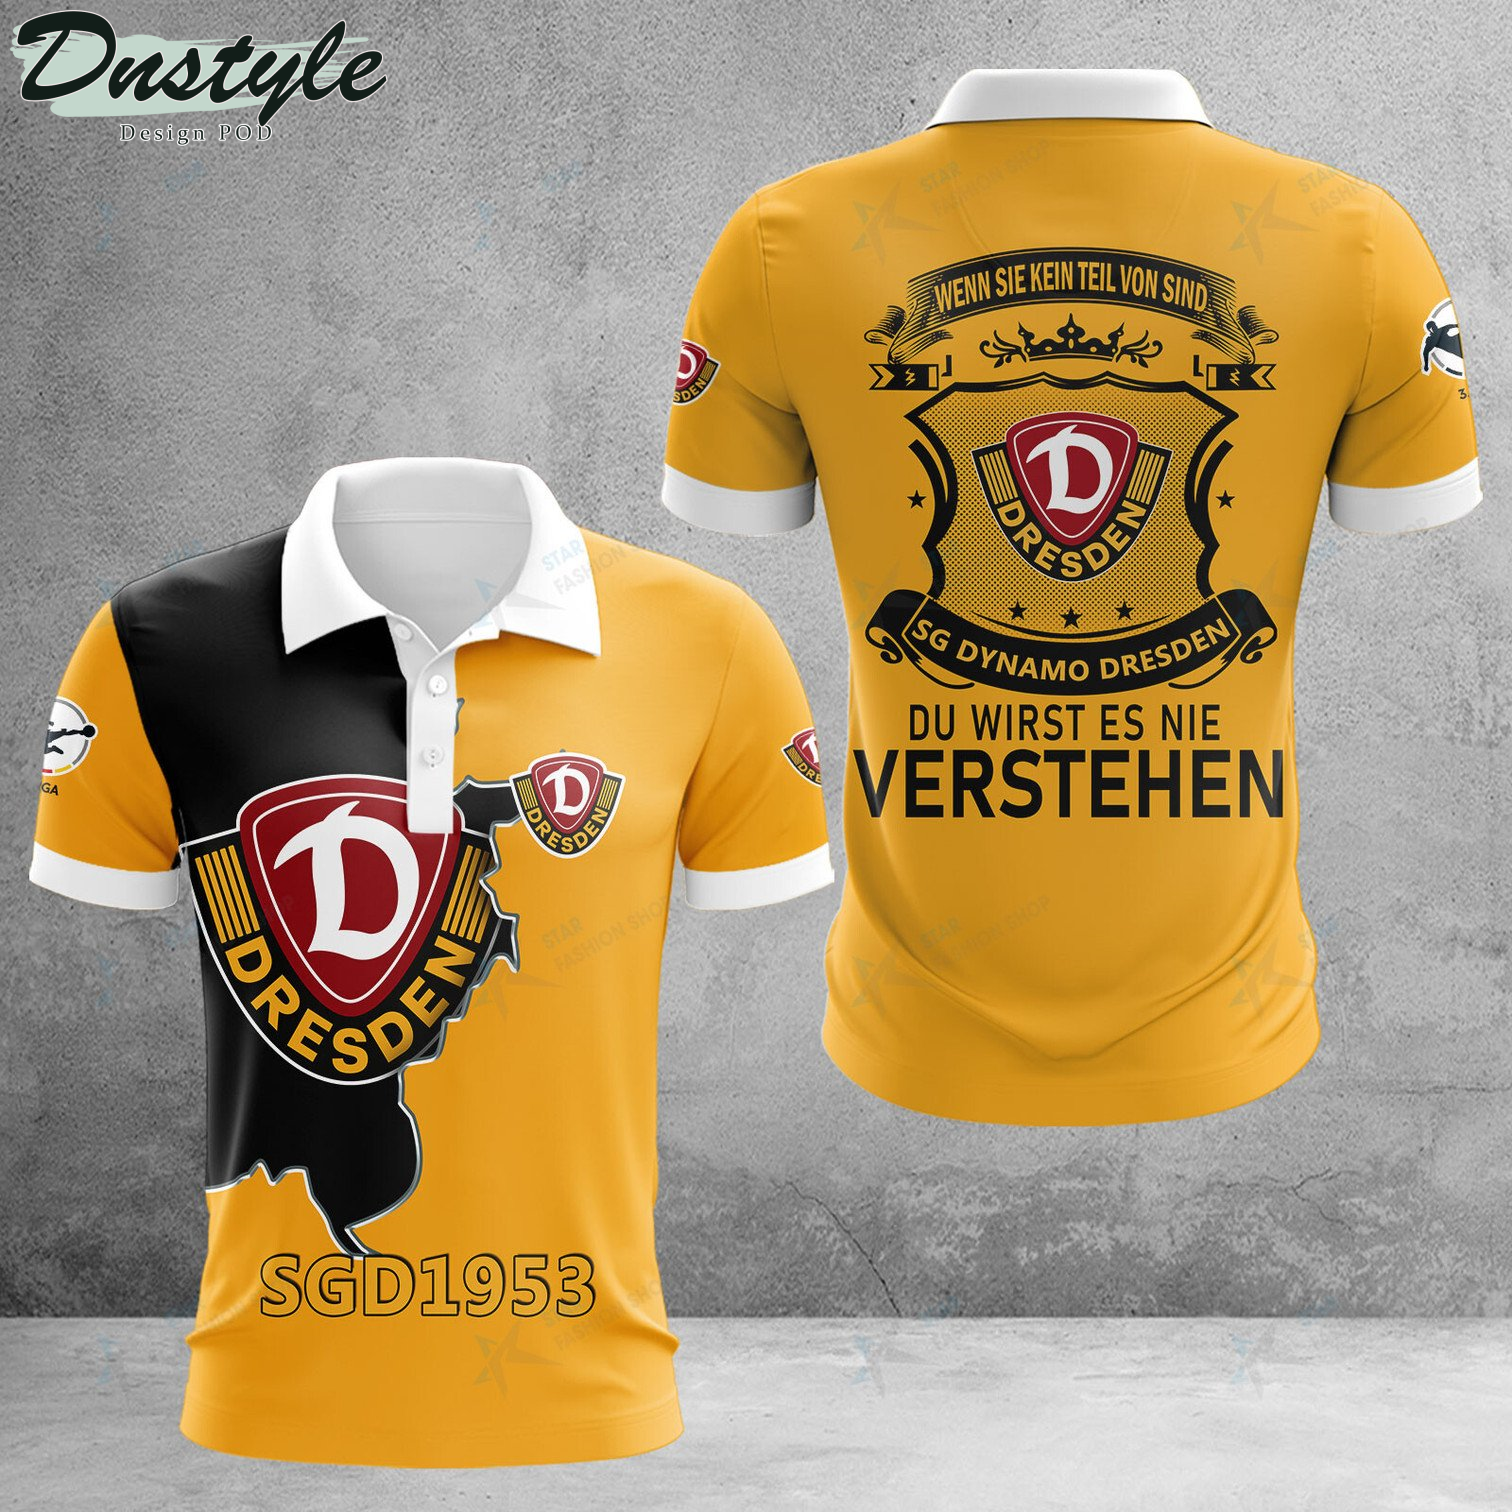 Dynamo Dresden wenn sie kein teil von sind du wirst es nie verstehen Polo Hemd